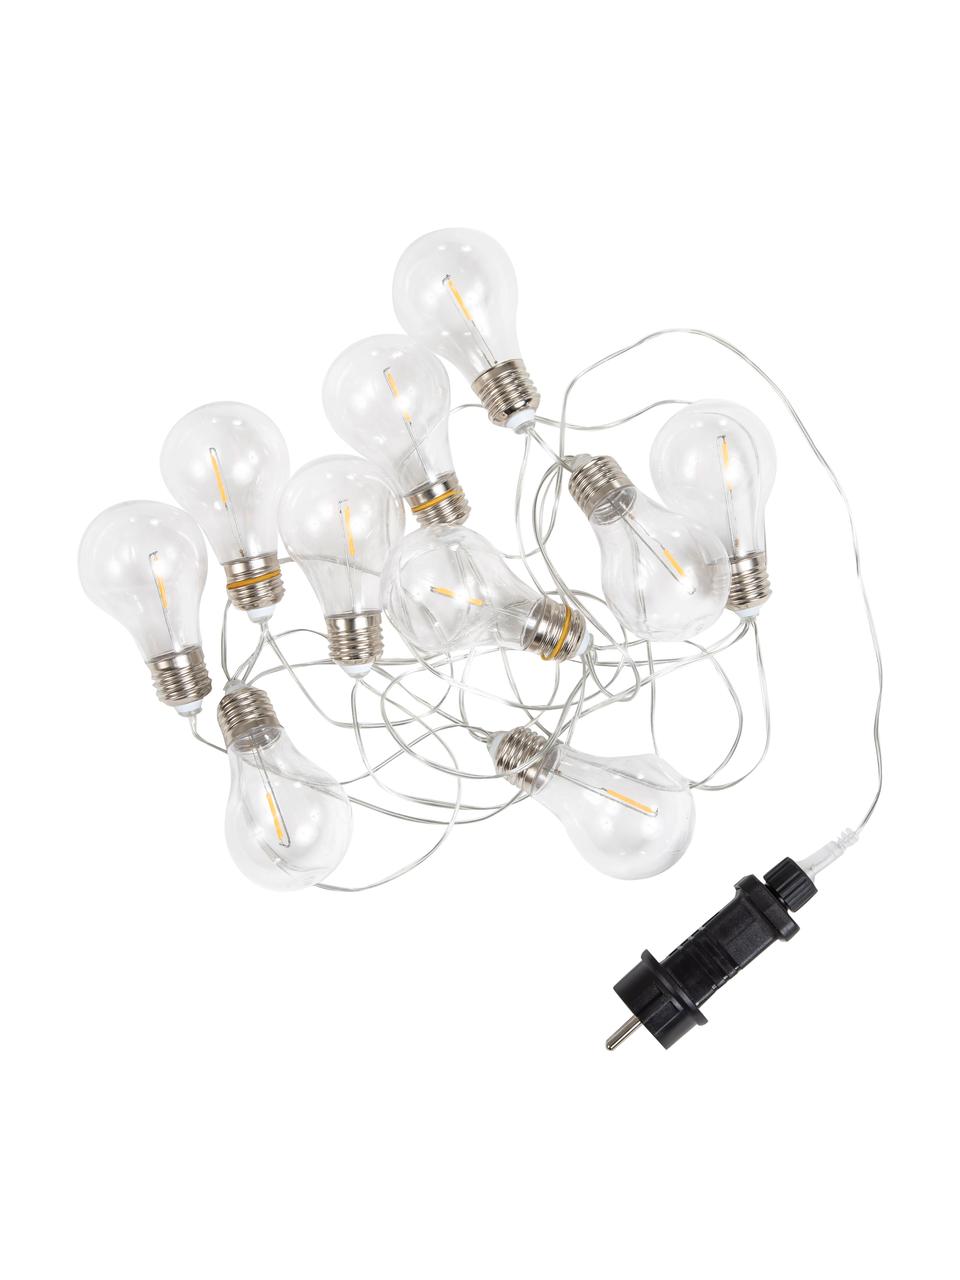 Venkovní světelný LED řetěz Stella, 450 cm, 10 lampionů, Transparentní, stříbrná, černá, D 450 cm